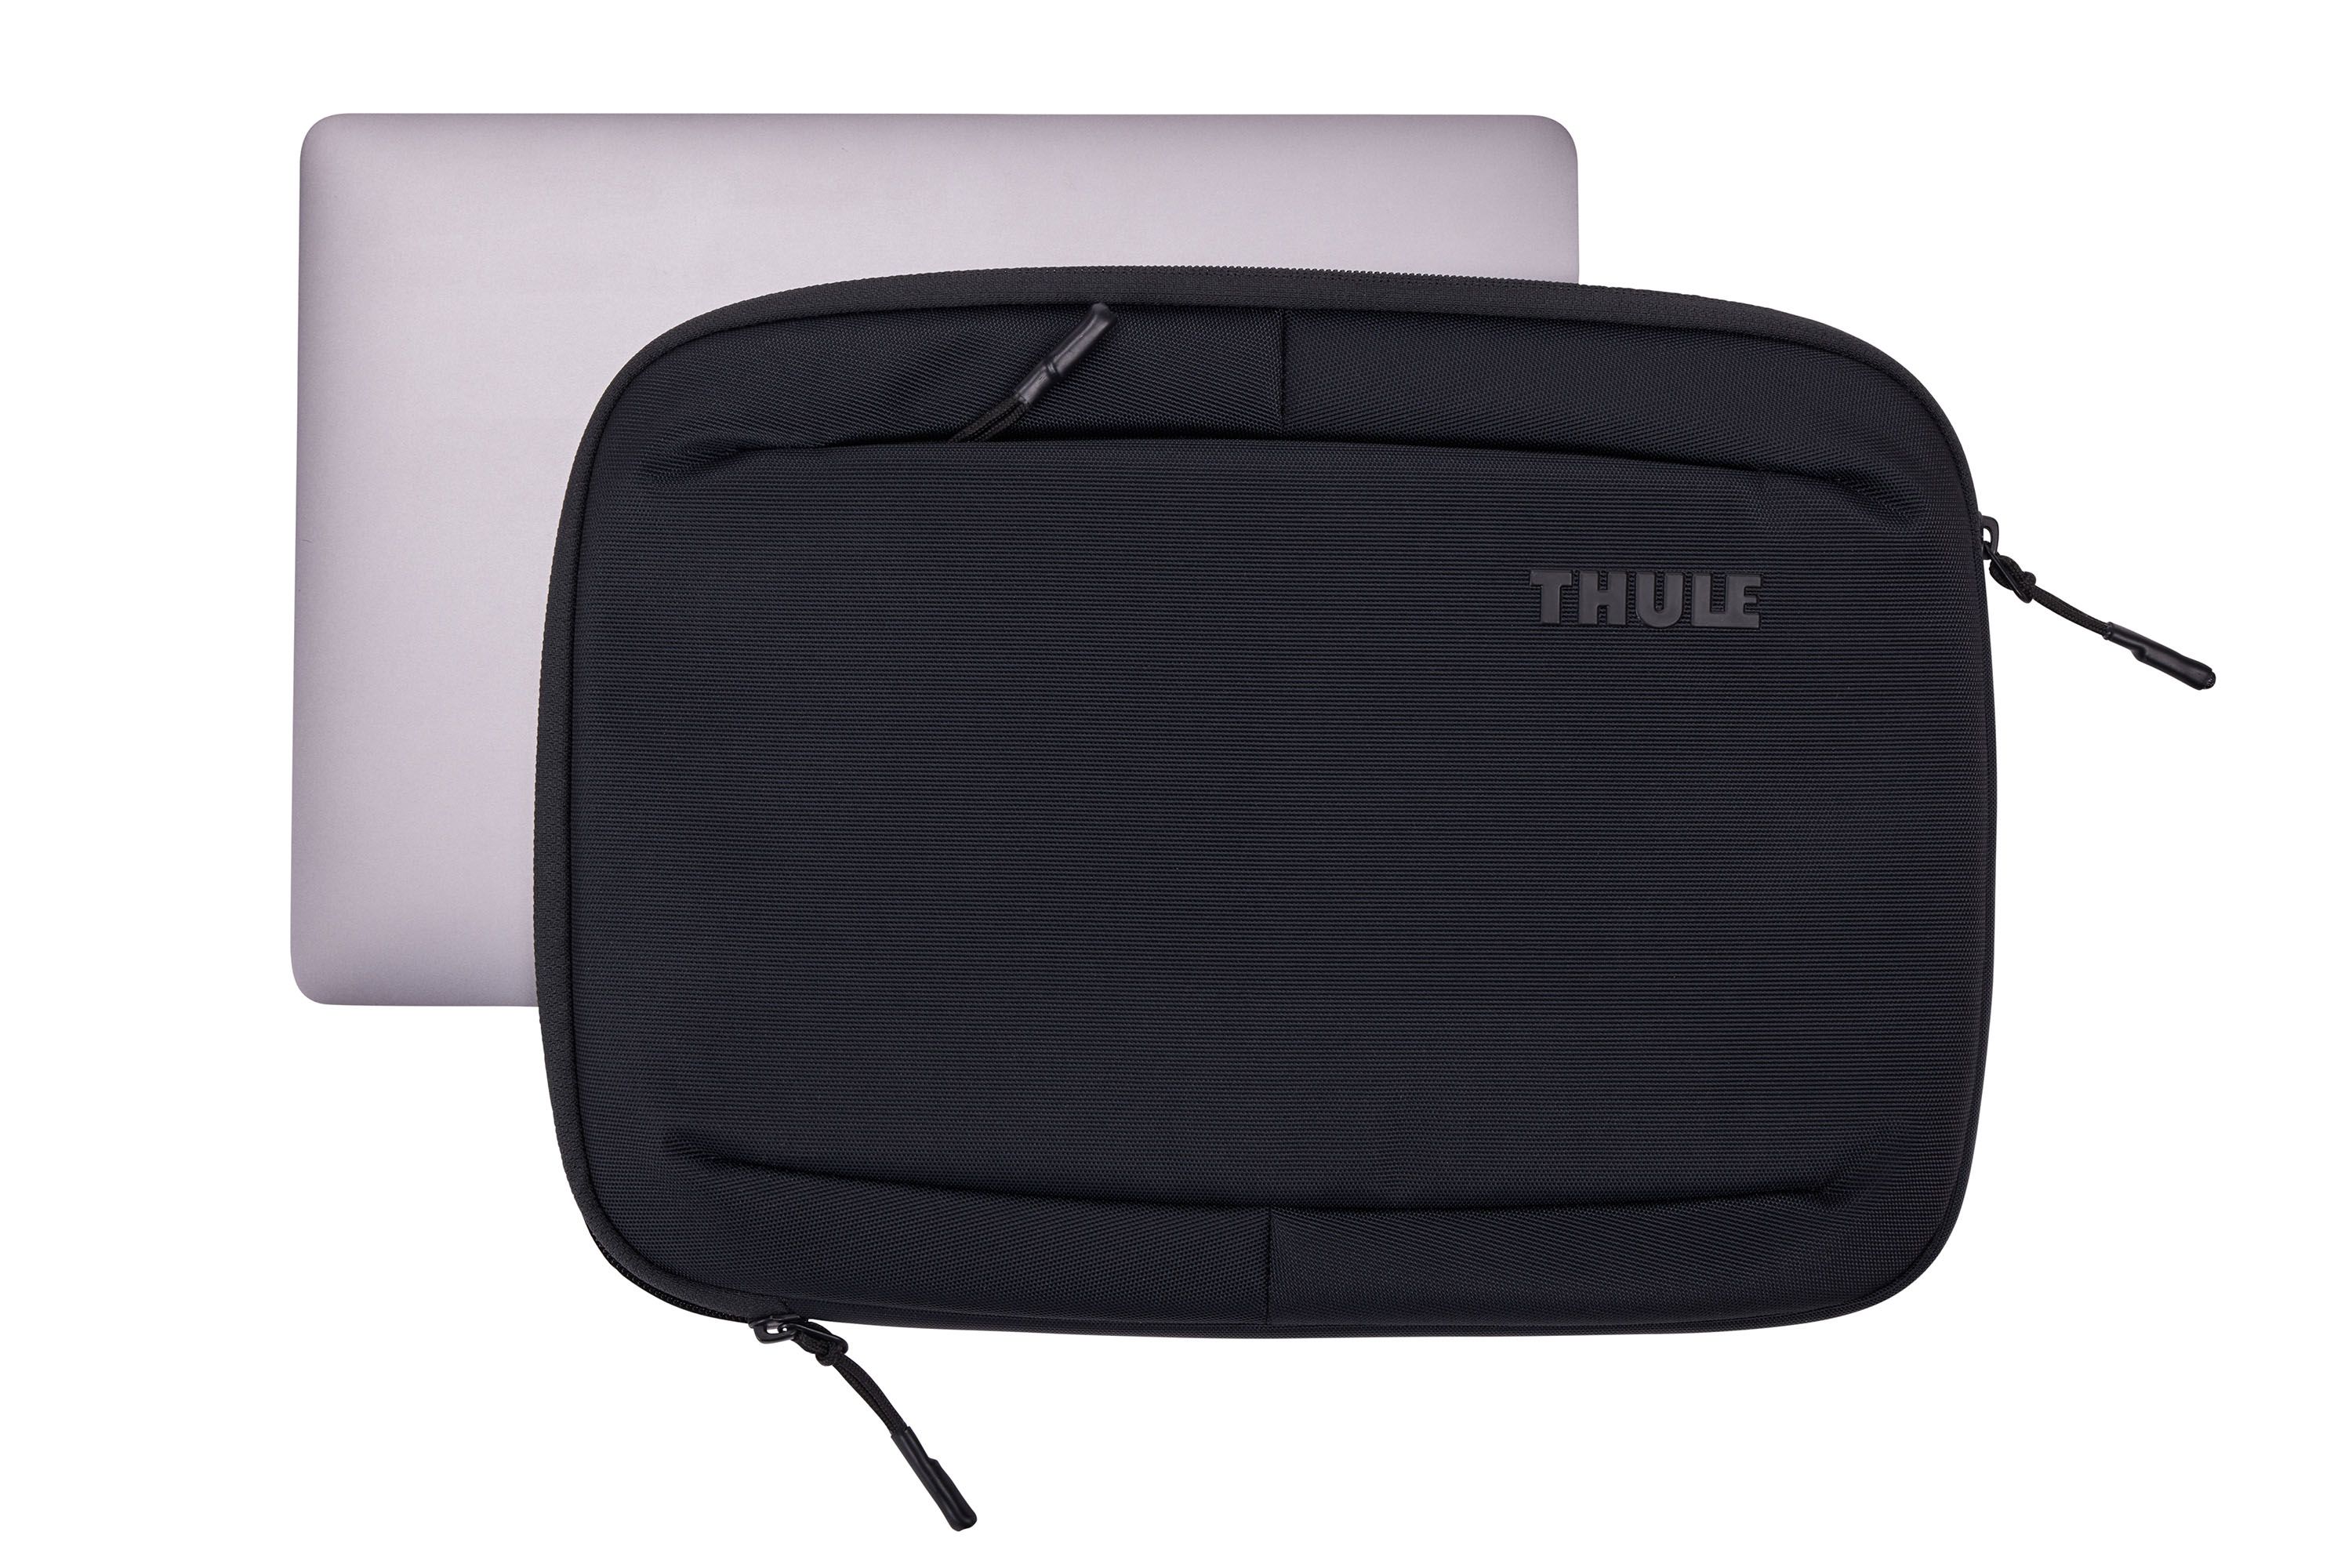 Thule Subterra MacBook Sleeve 13"